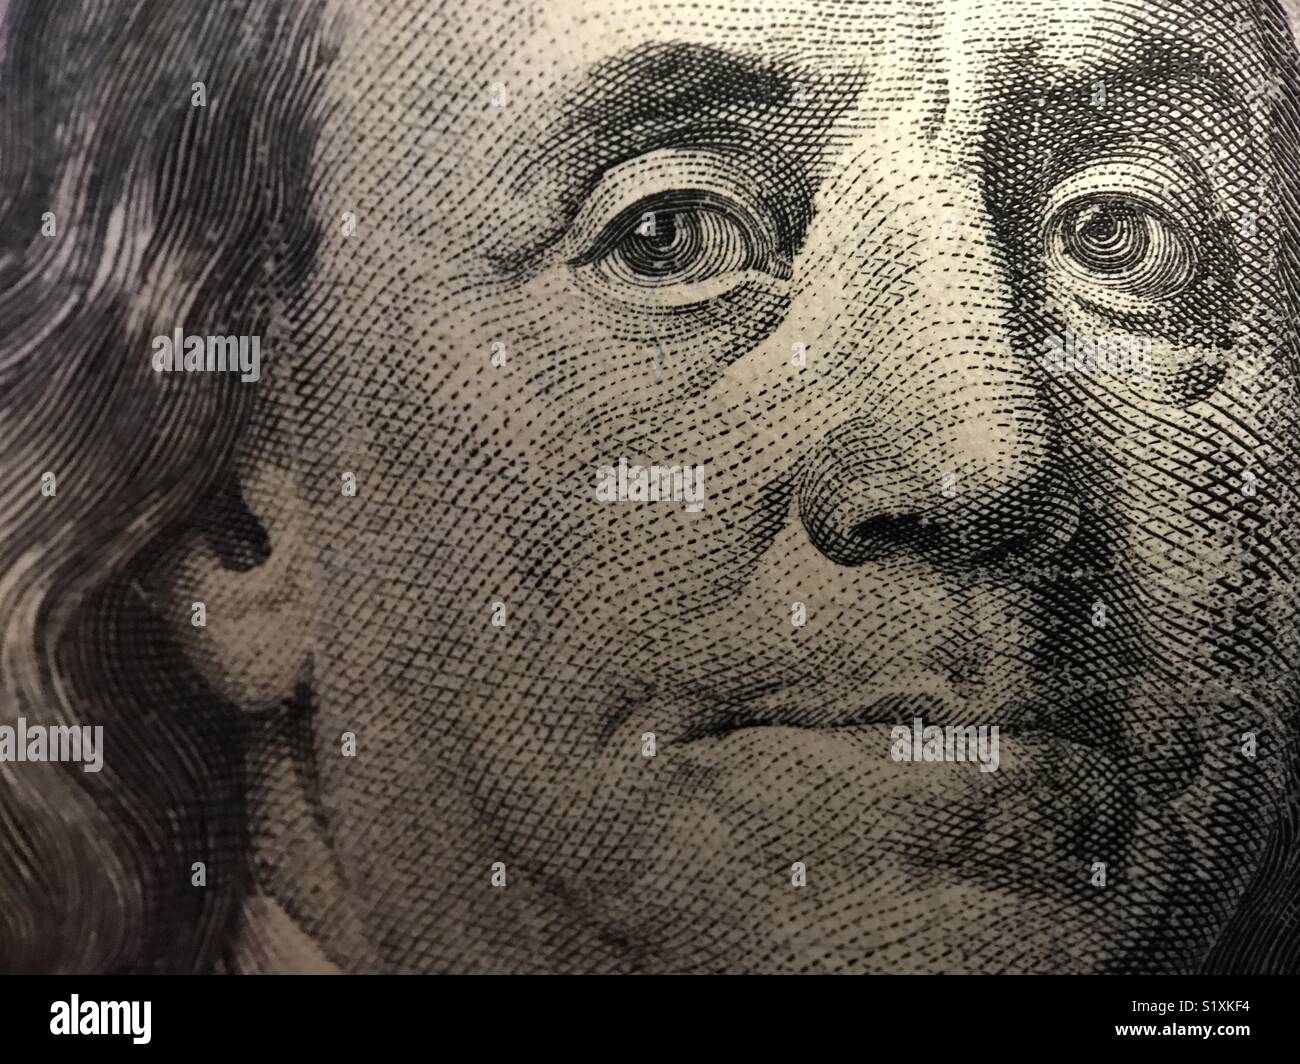 De près, regarder le visage de Benjamin Franklin sur le devant d'un billet de 100 dollars américains. Banque D'Images